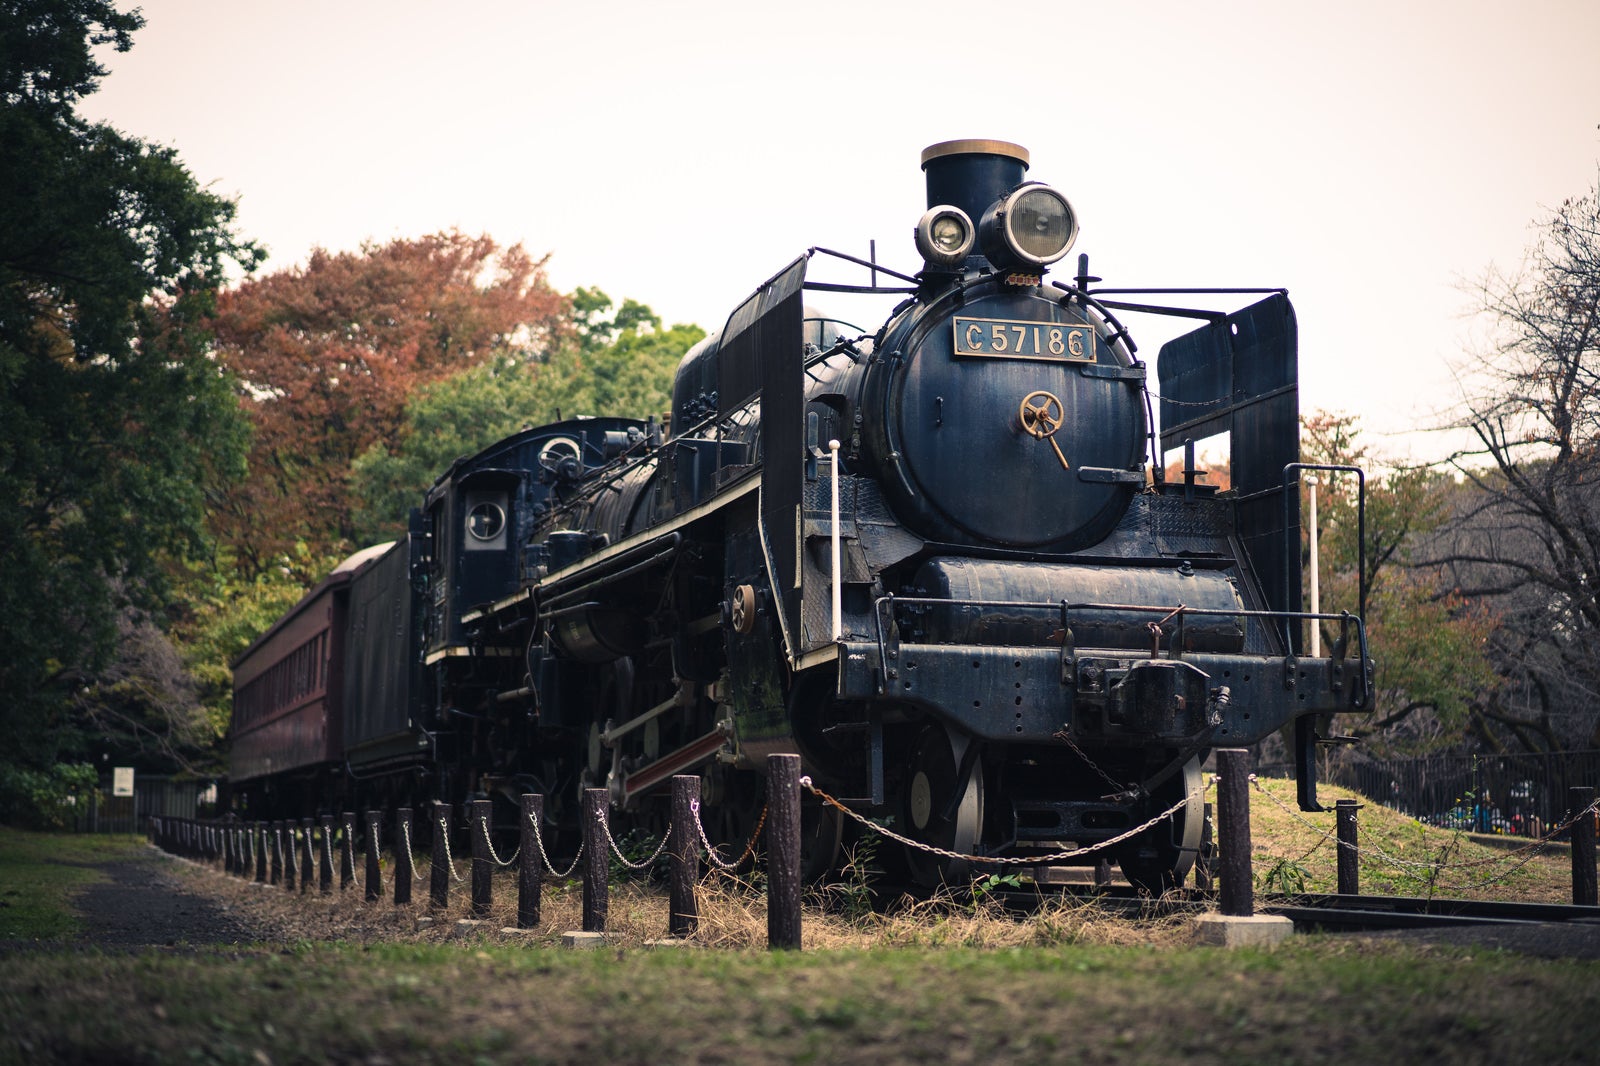 「保存車両とされた機関車C57186」の写真